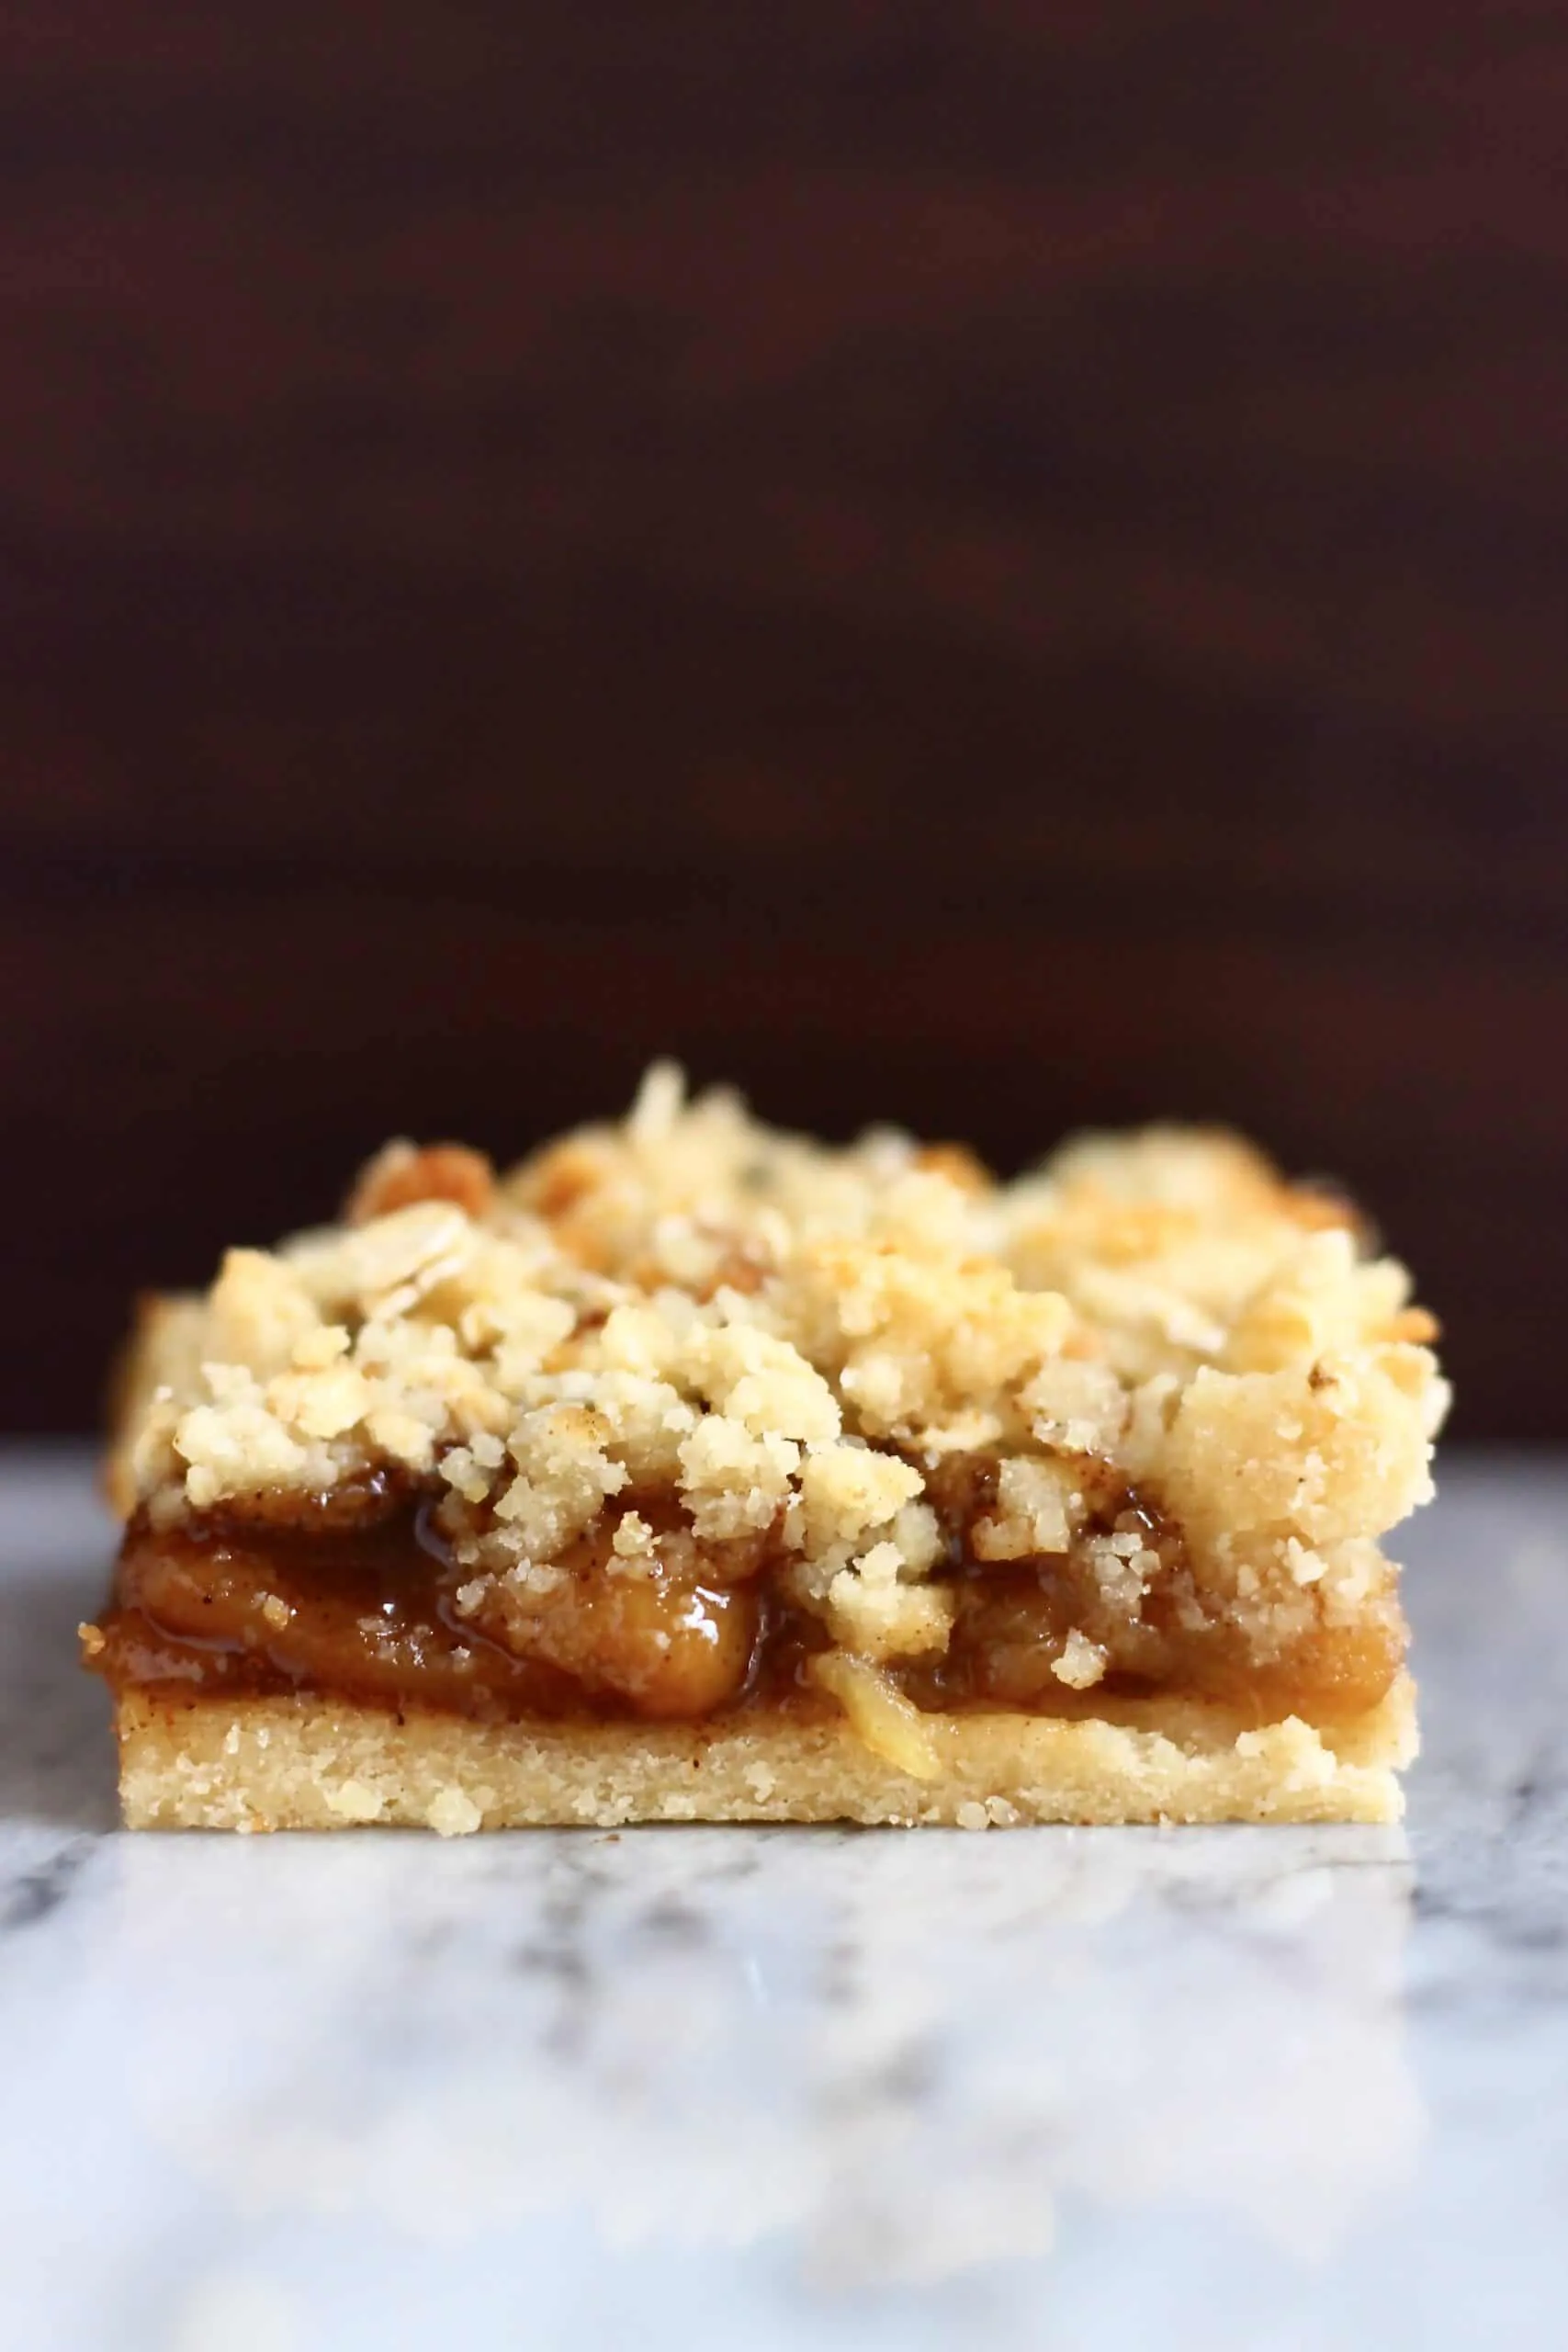 Gluten-free vegan apple pie bar on a marble slab against a dark brown background